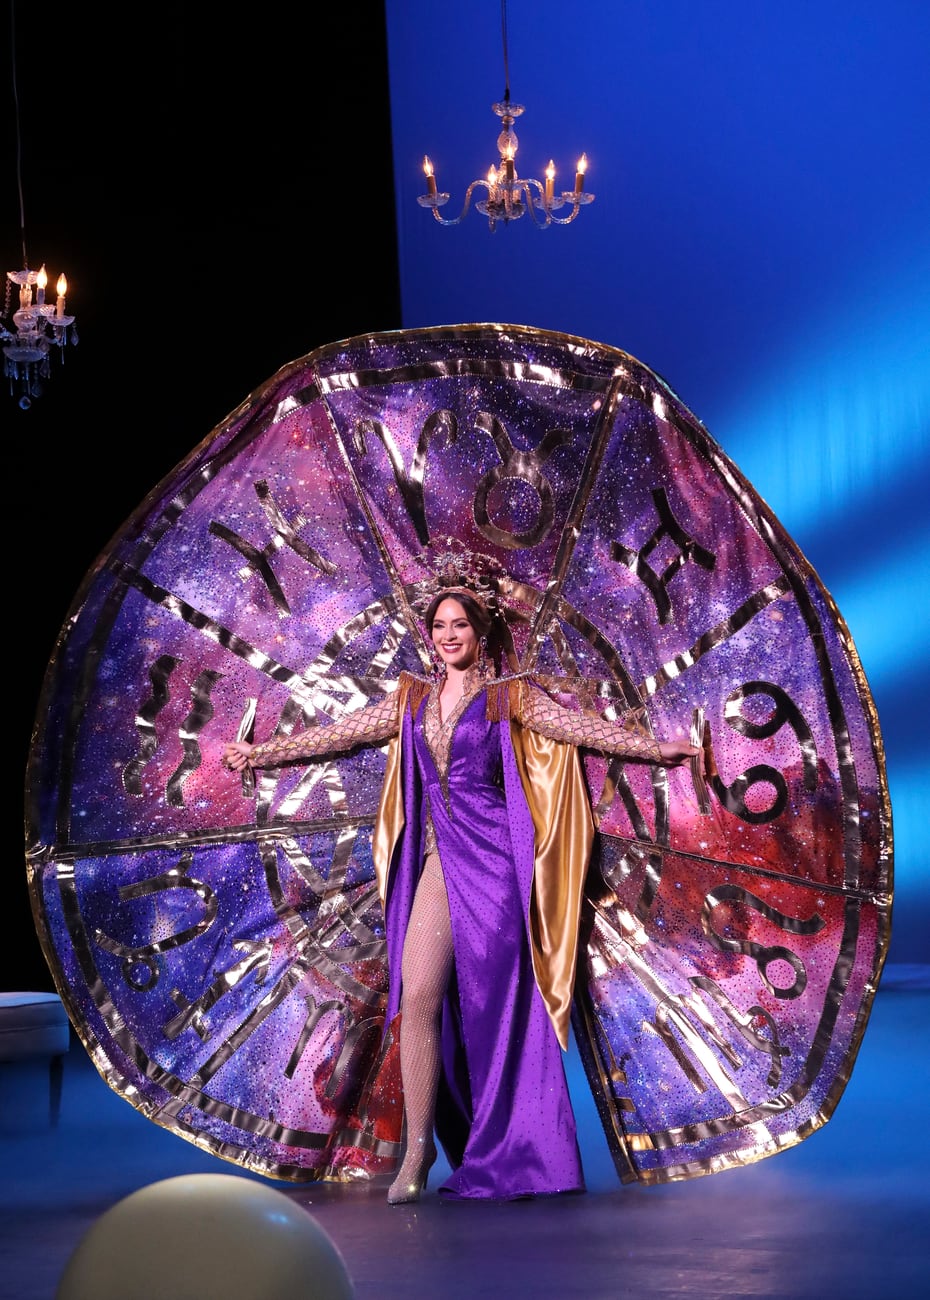 Estefanía Soto rumbo a Miss Universe presenta traje típico en honor a